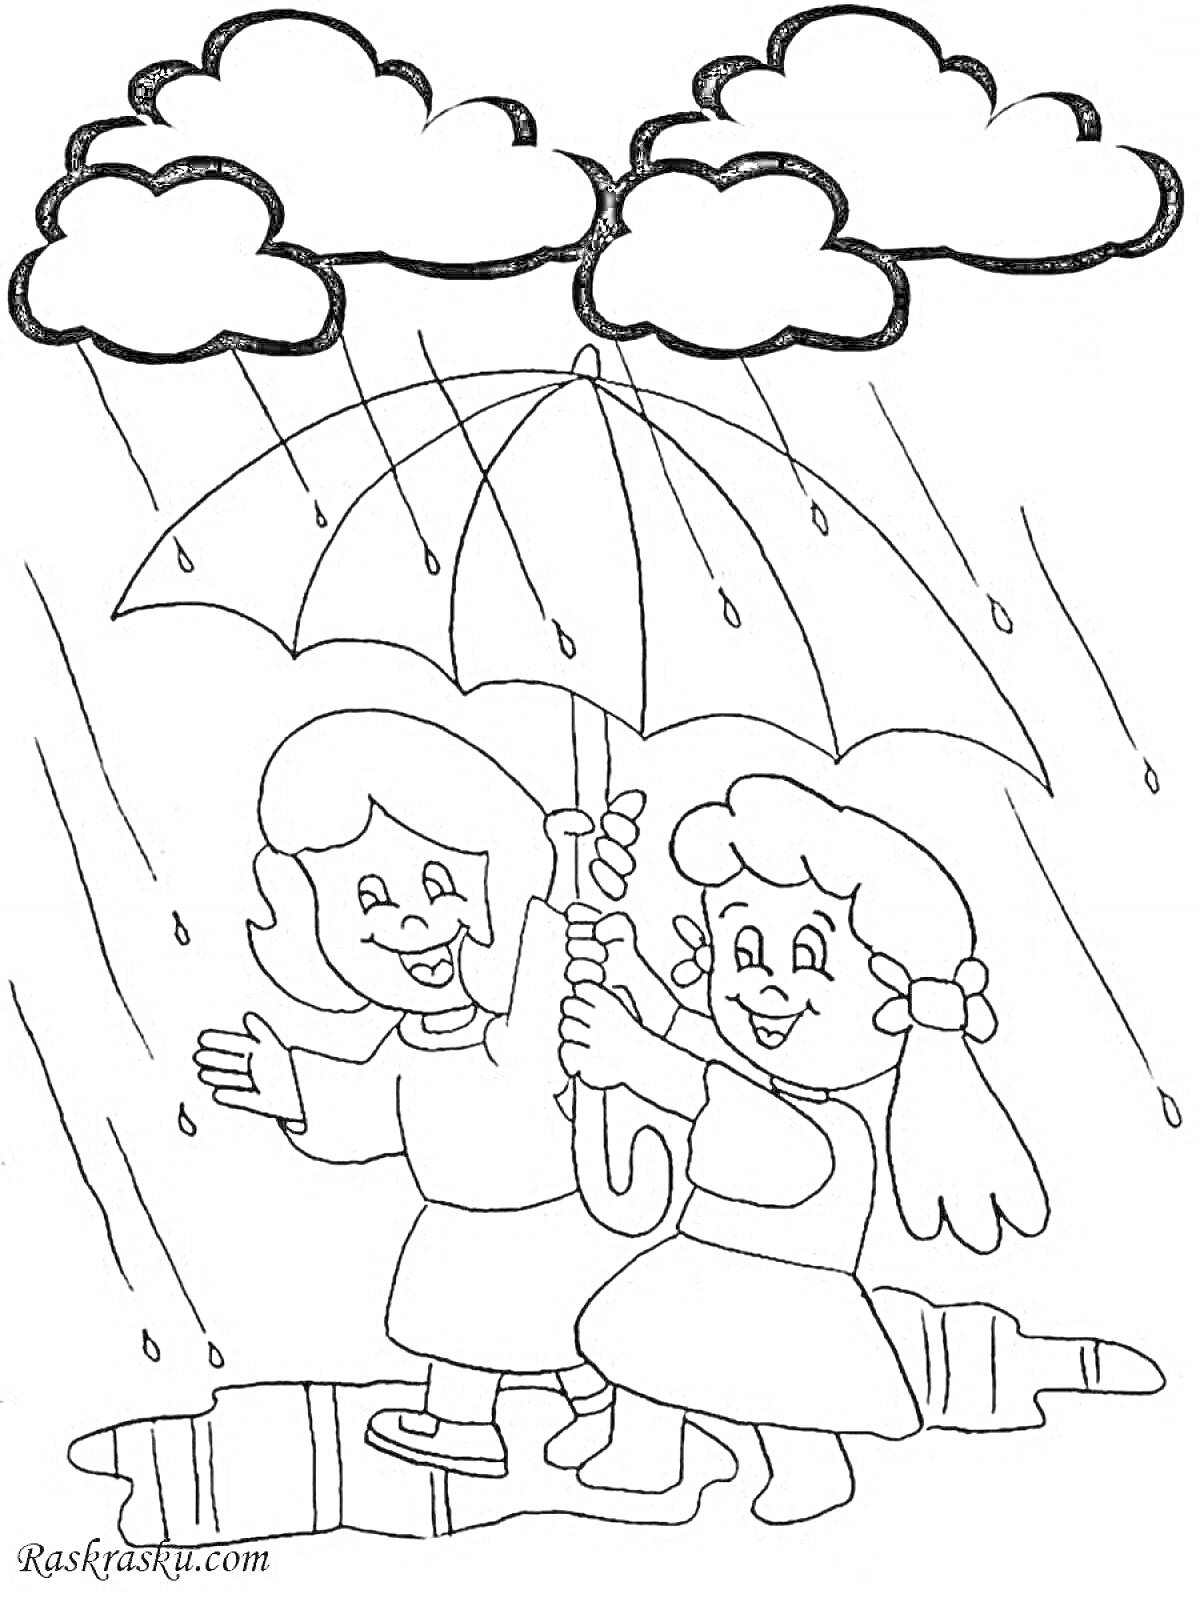 Раскраска Дети под зонтом под дождем - двое детей держат зонт под дождем, вокруг падают капли дождя, наверху три облака.